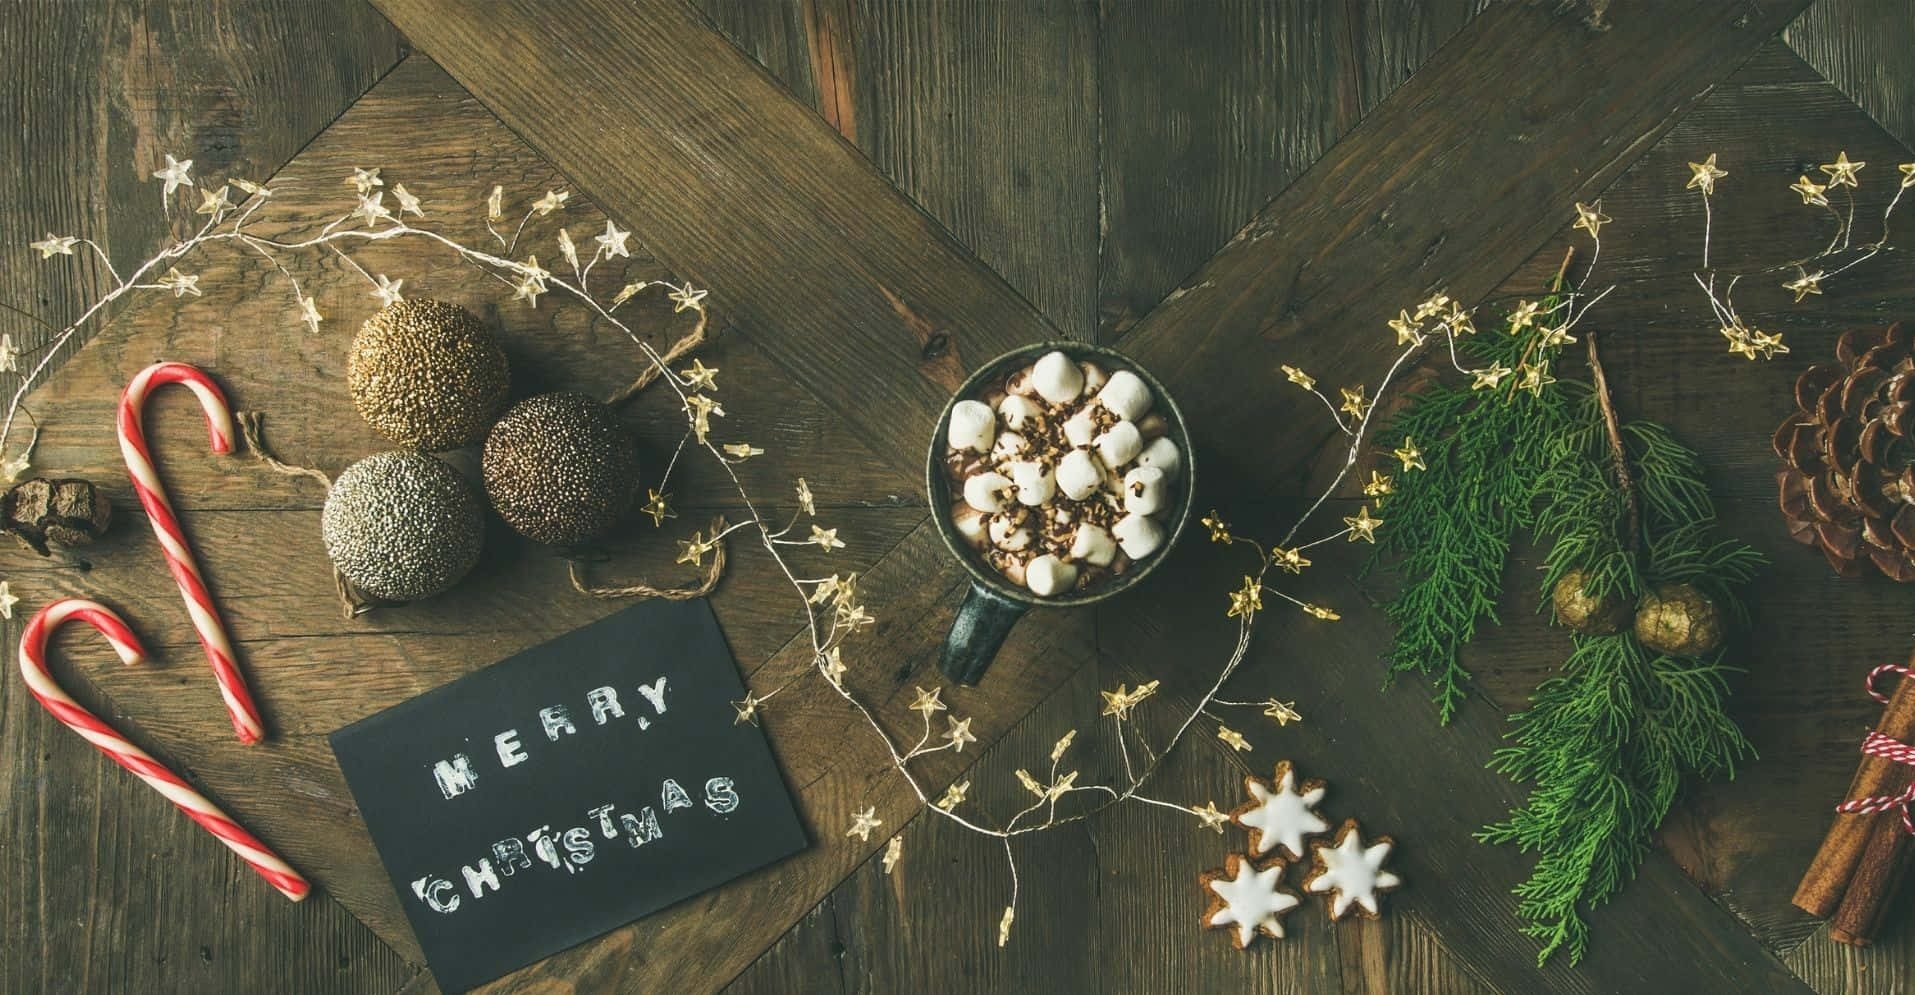 Hãy tải xuống nền Zoom trang trí Giáng Sinh để bạn có thể đưa không khí của kỳ nghỉ lễ vào các cuộc họp trực tuyến. Với các hình ảnh liên quan đến kỳ nghỉ Giáng Sinh, nền Zoom sẽ giúp cho các cuộc họp của bạn trở nên thú vị và đầy cảm hứng hơn bao giờ hết!